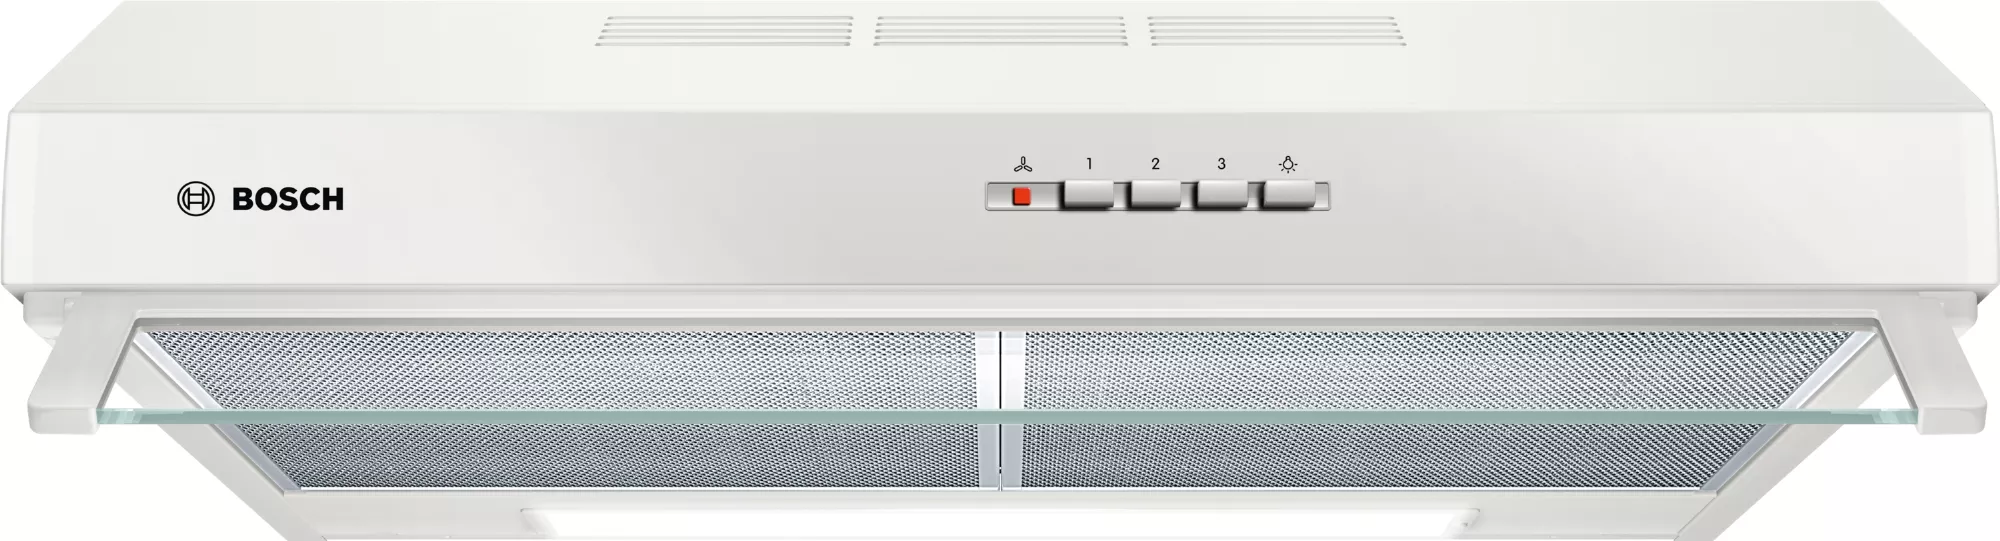 Bosch Serie 4, Unterbauhaube, 60 cm, Weiß, DUL63CC20